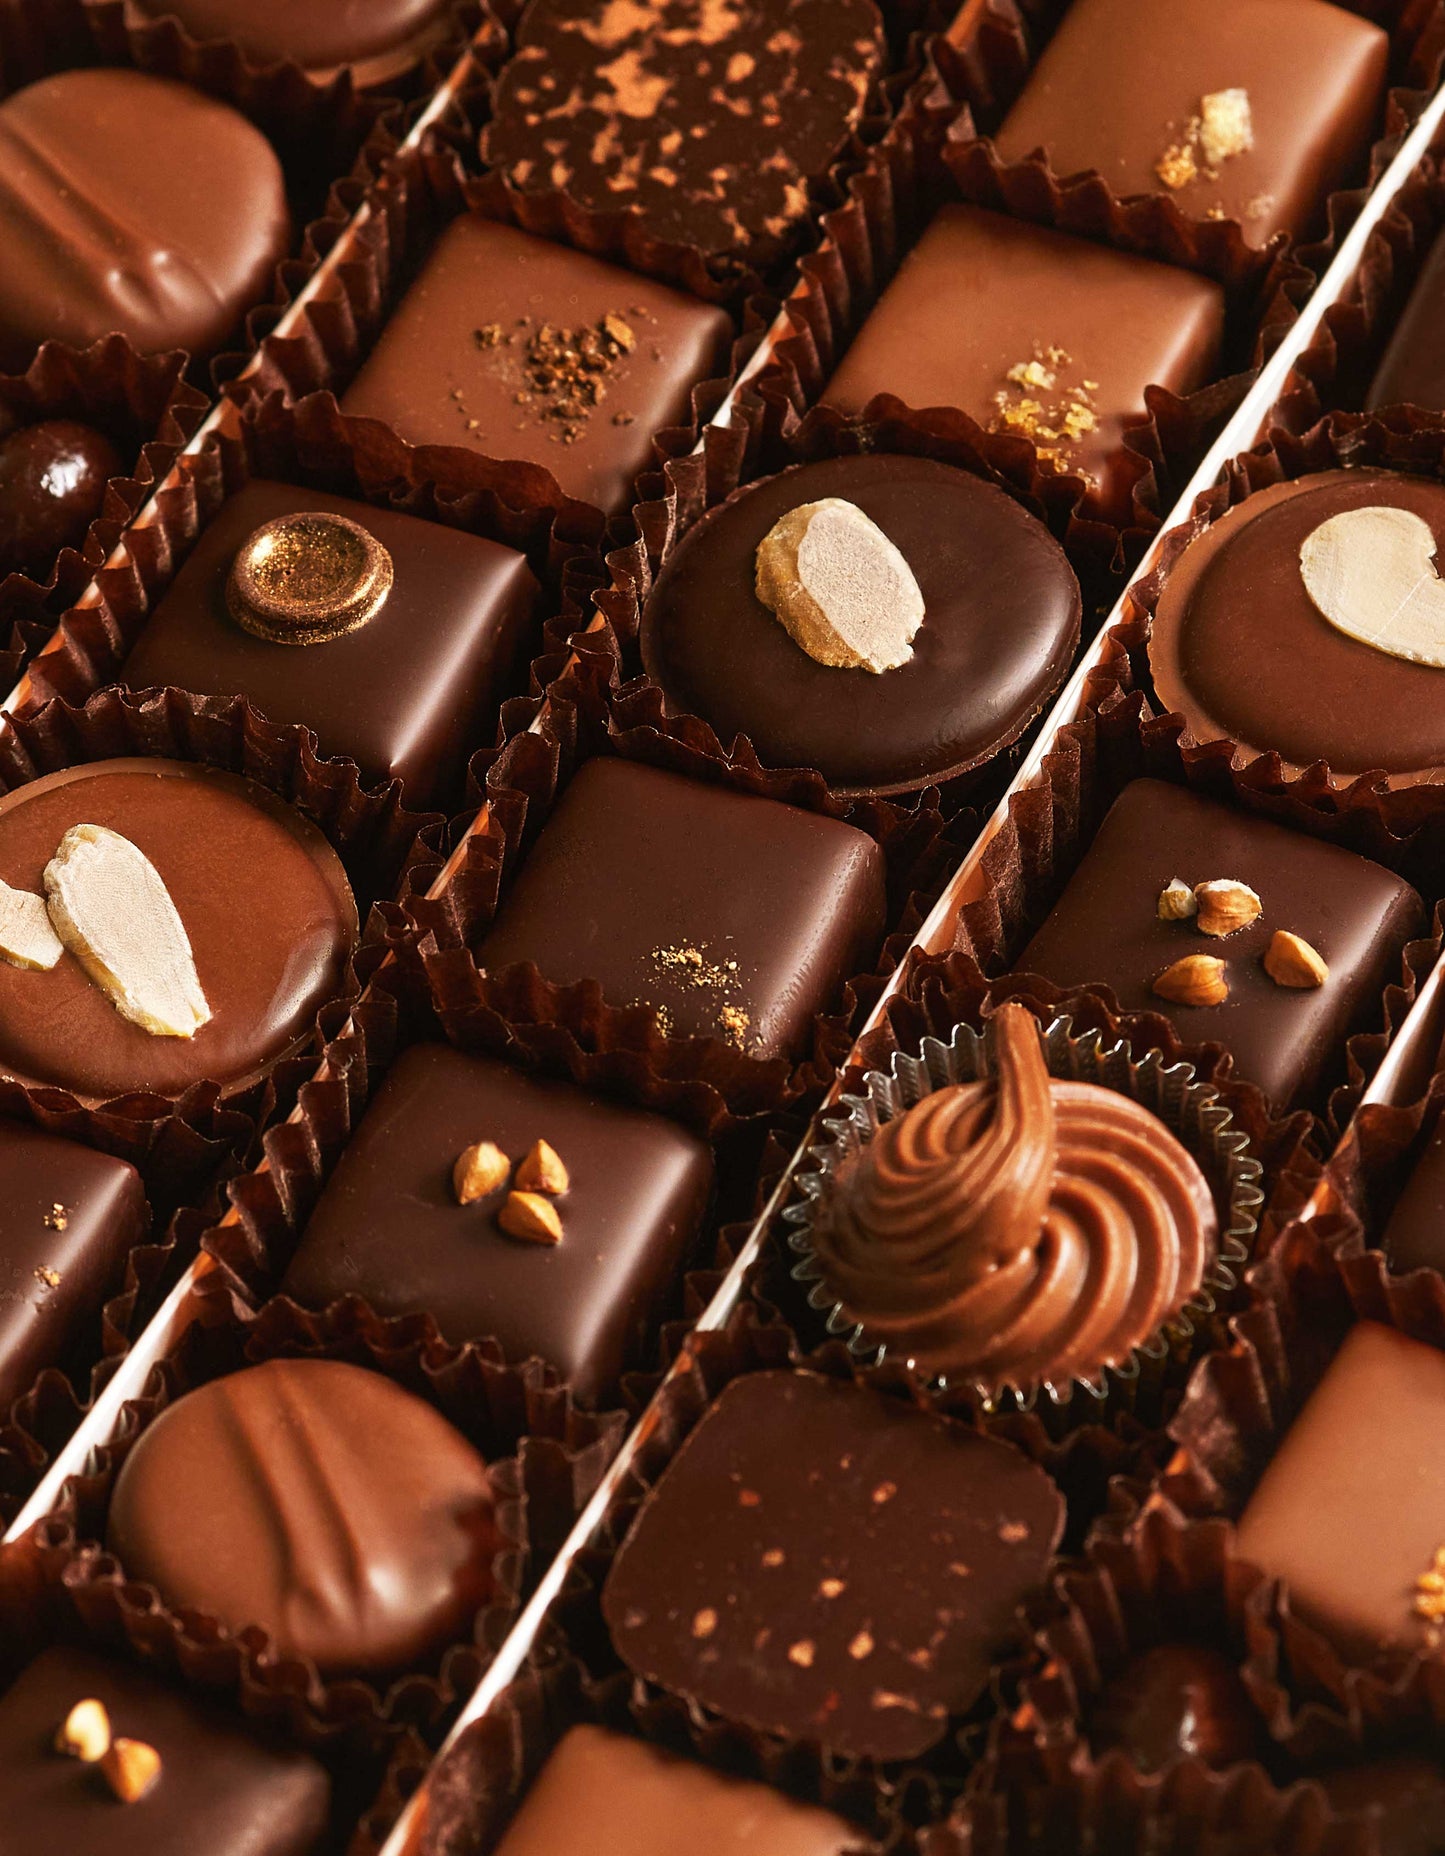 Les chocolats Noirs et Laits (54 chocolats)